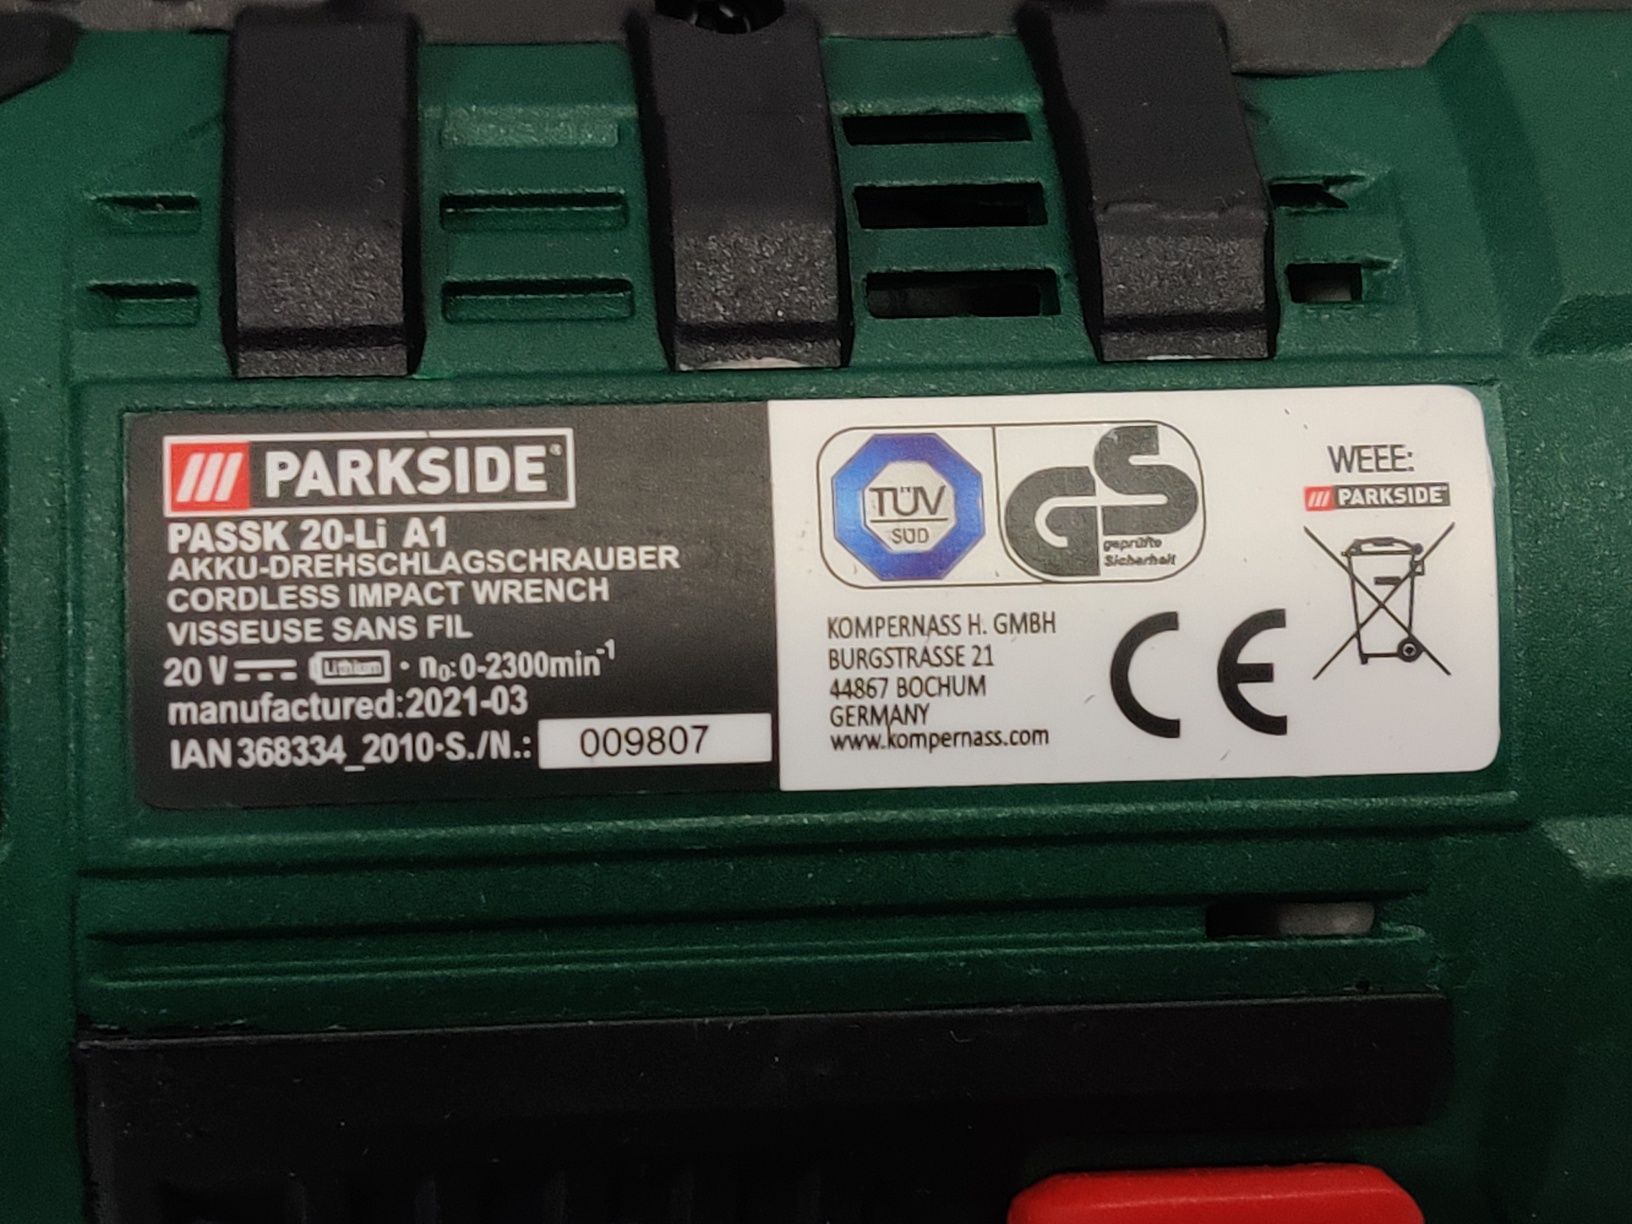 НОВ мощный 400нМ аккумуляторный гайковерт с Германии Parkside PASSK 20